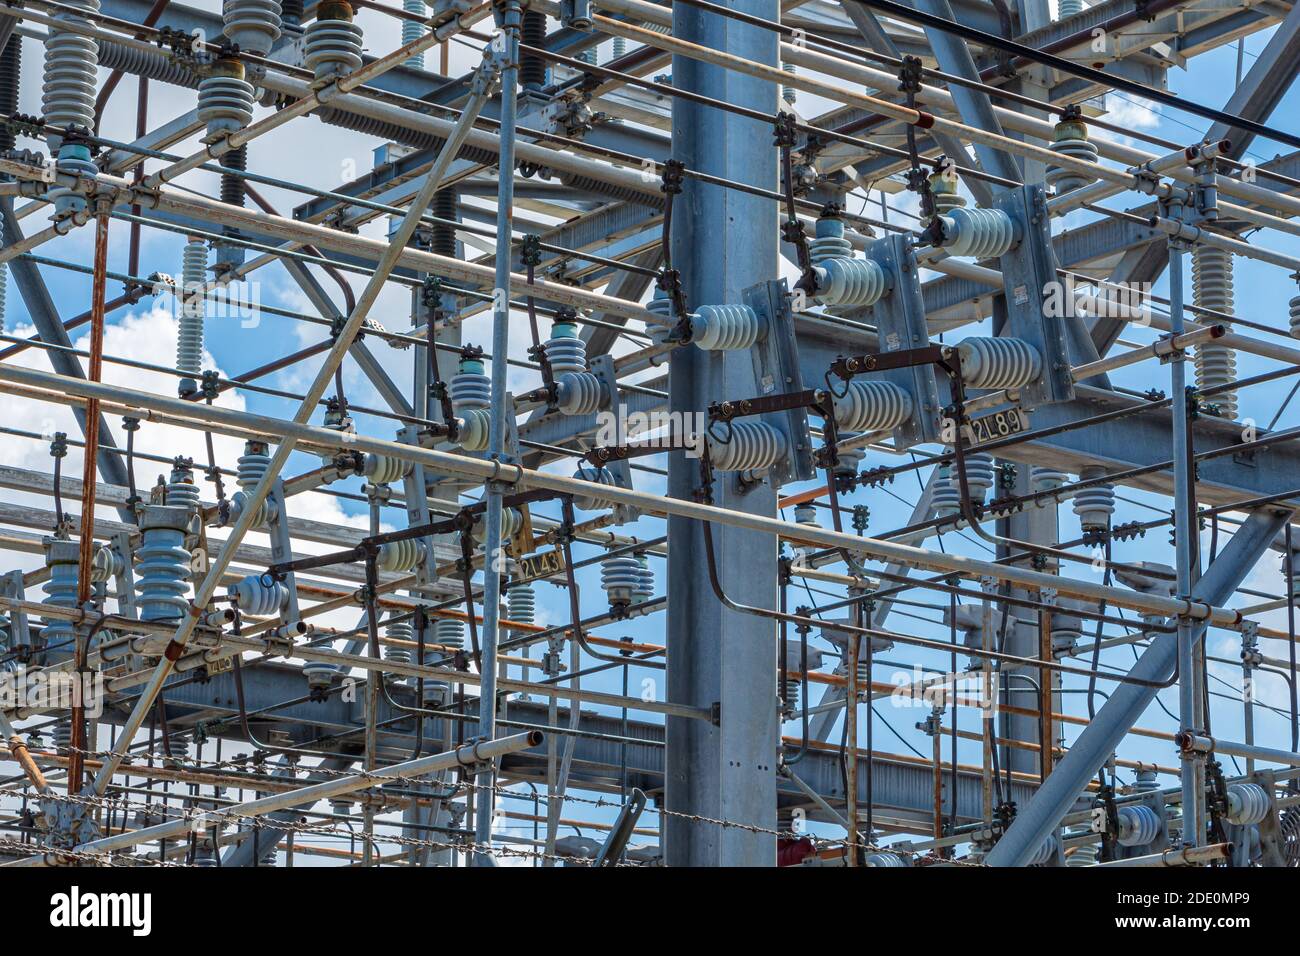 Subestación eléctrica FPL closeup, central eléctrica con equipo eléctrico - Florida, EE.UU Foto de stock